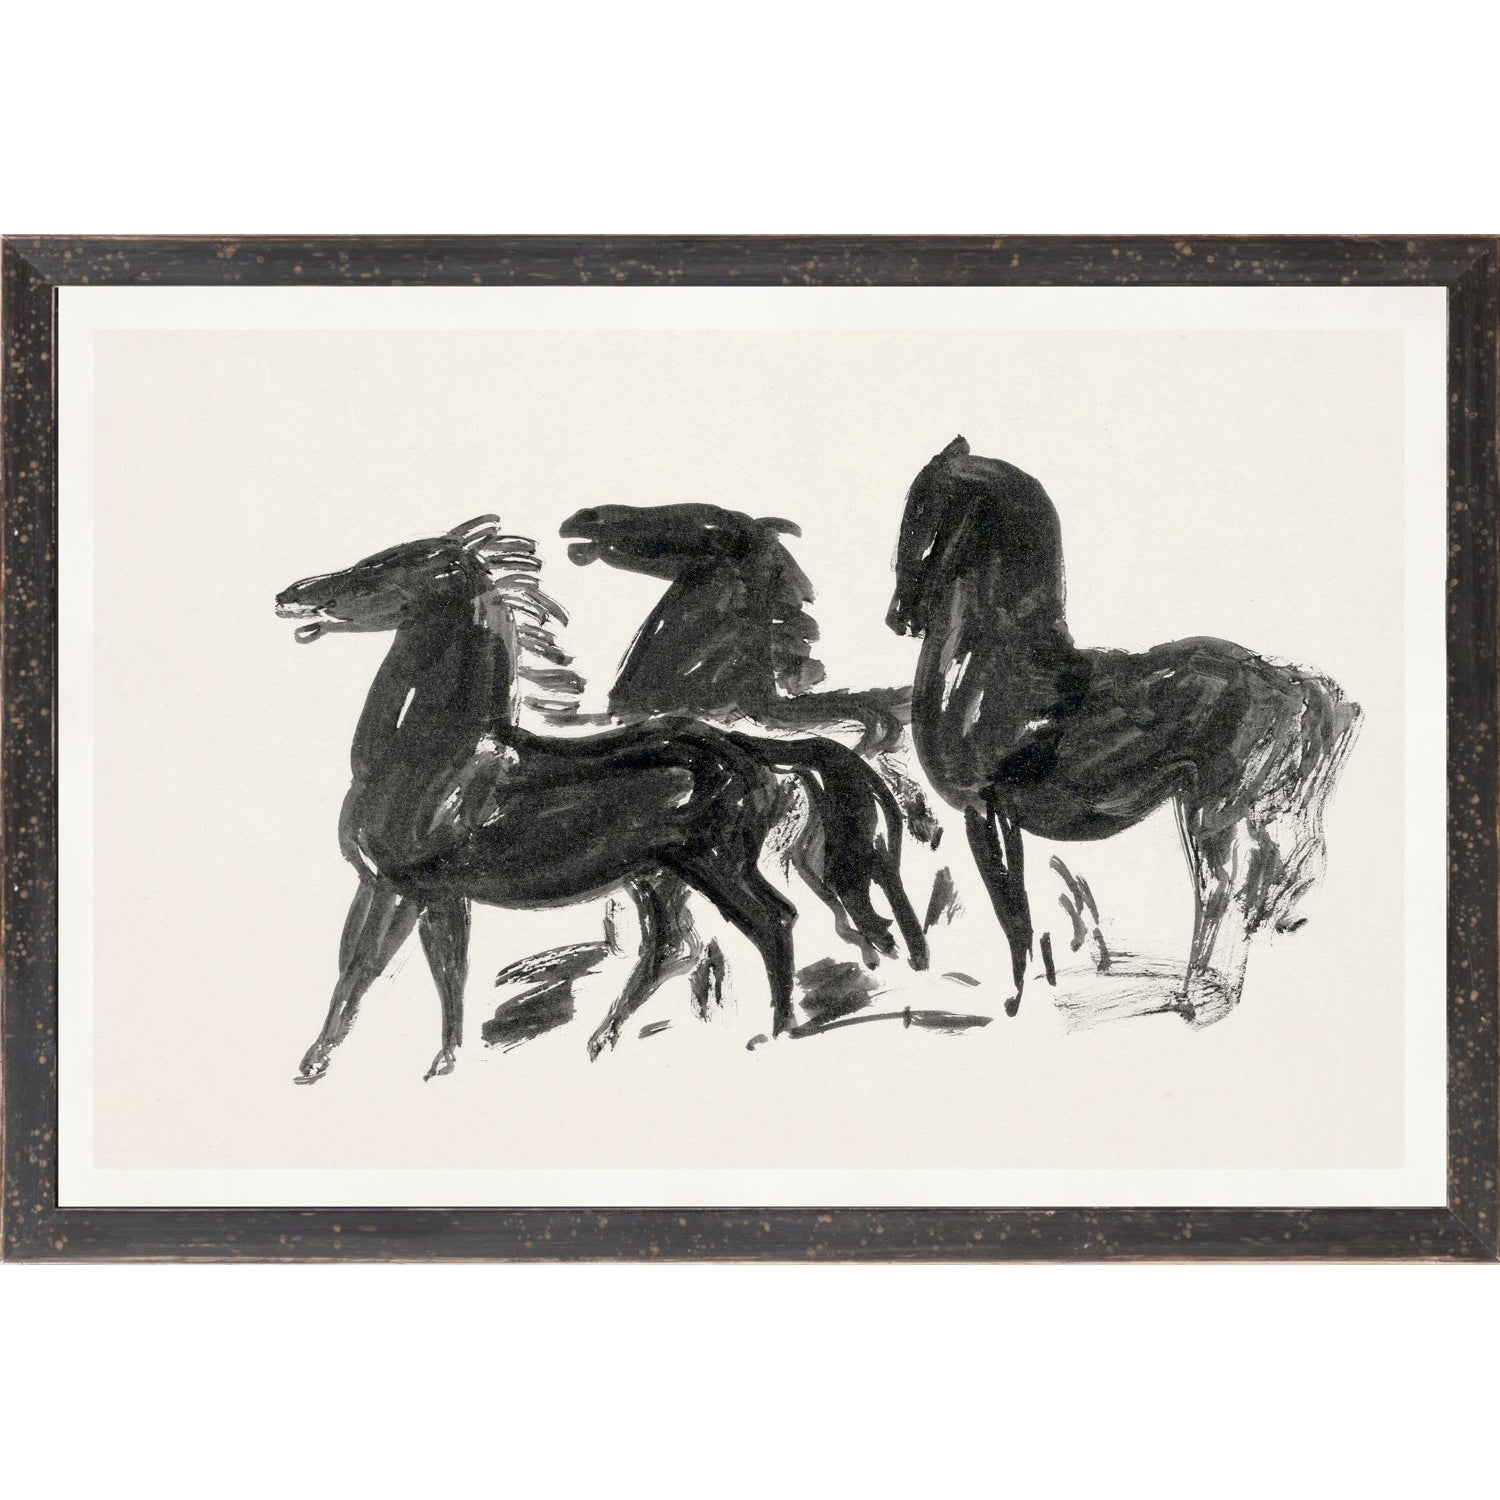 GESTEL, THREE HORSES WALL ART PRINT - 1900